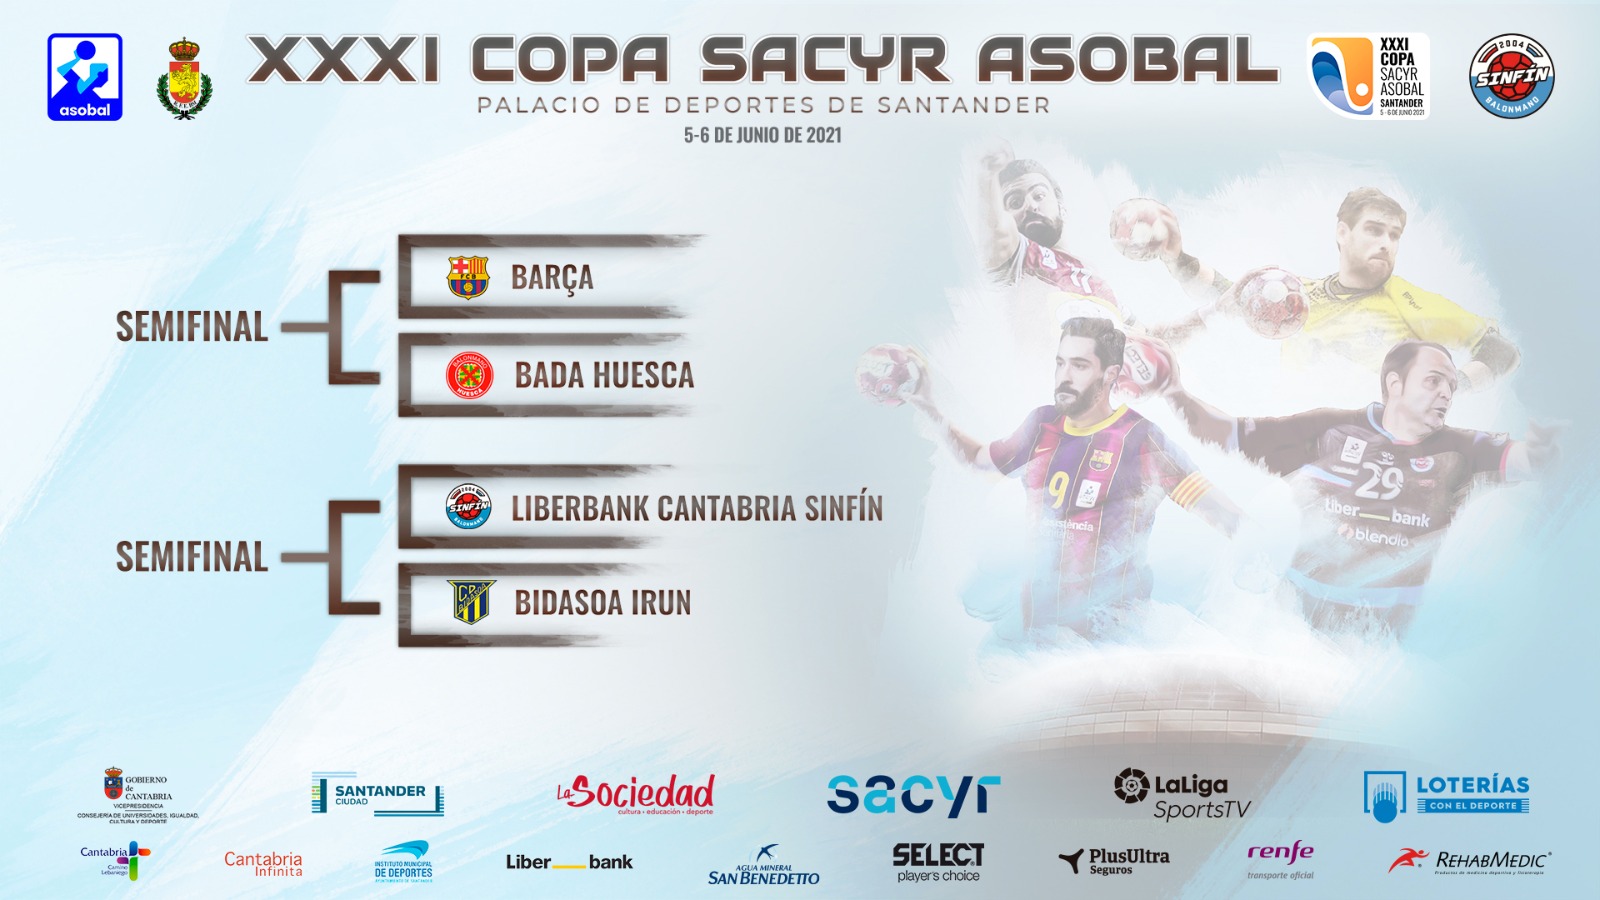 Los cruces de la Copa Sacyr Asobal que se celebrará los días 5 y 6 en Santander / Asobal